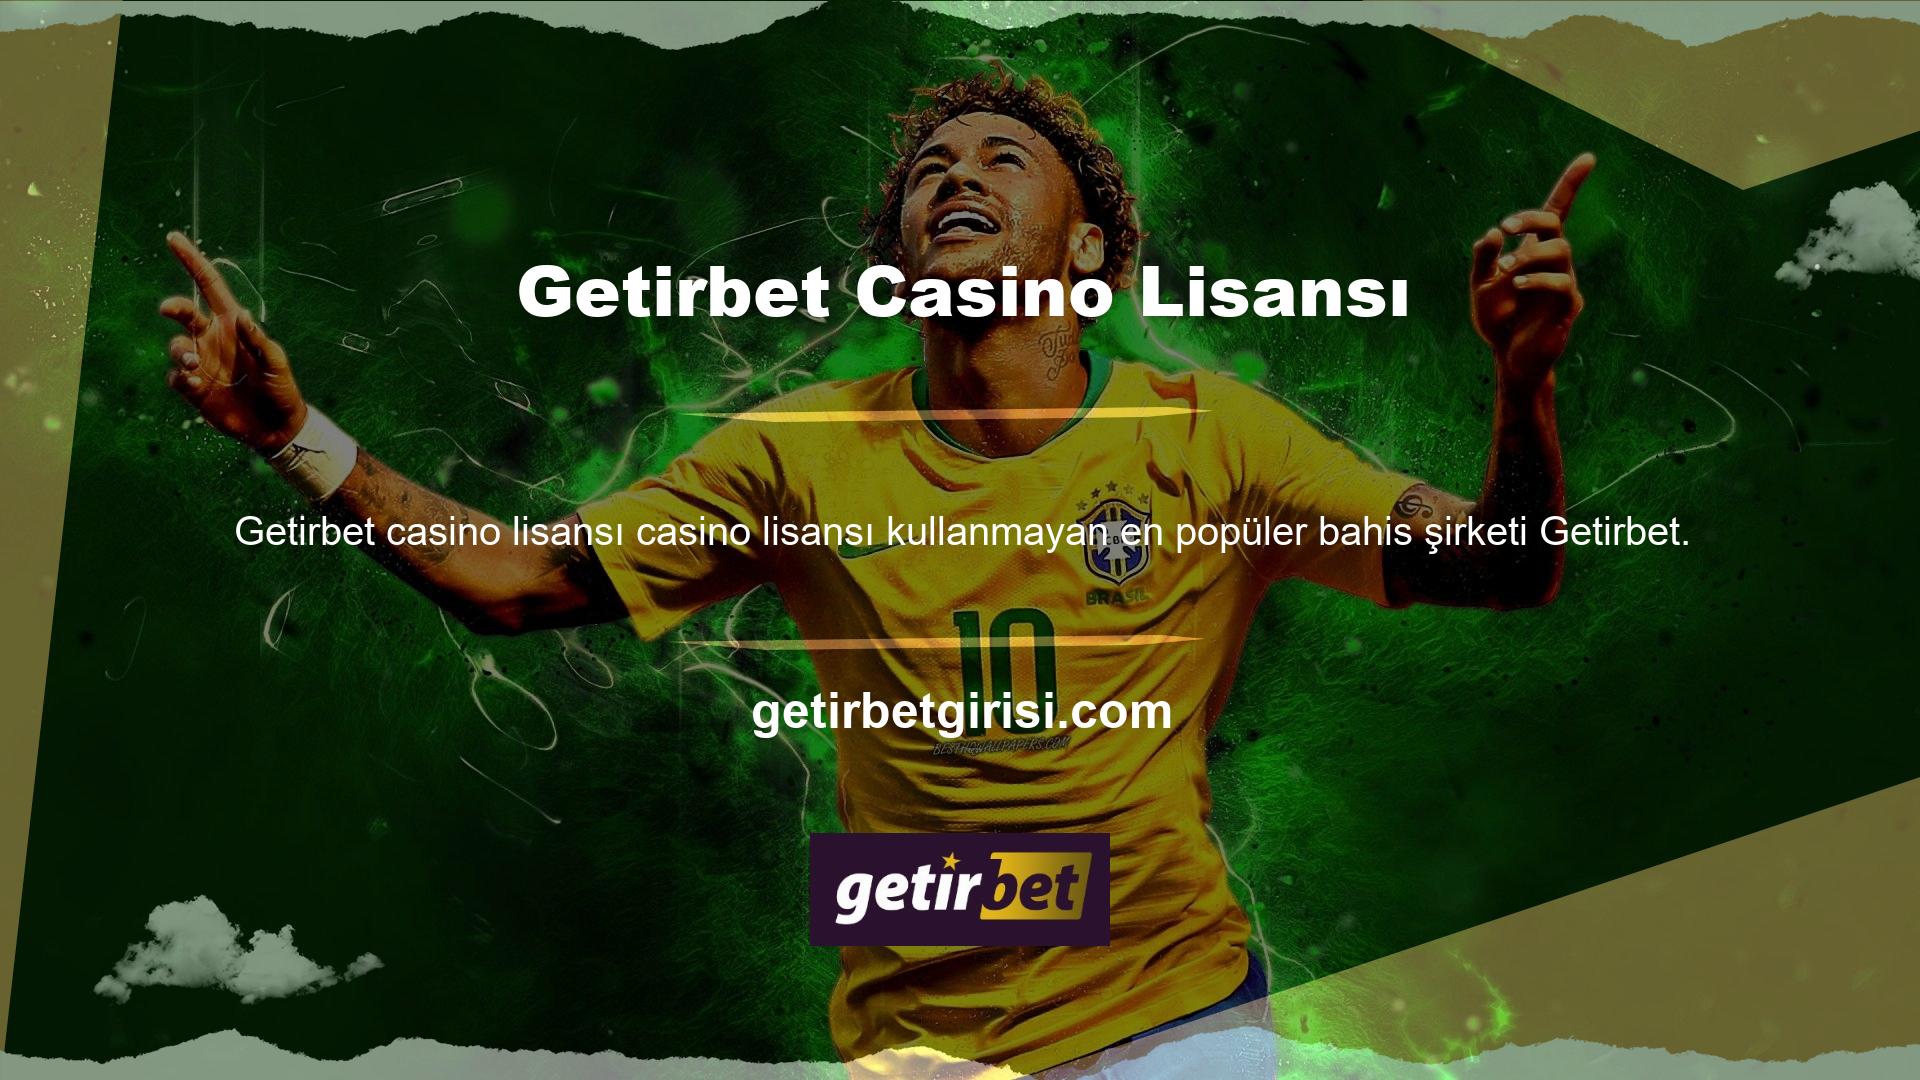 Getirbet oyun şirketi, Türkiye'deki casino oyunu meraklıları arasında güvenilir ve saygın bir kuruluştur